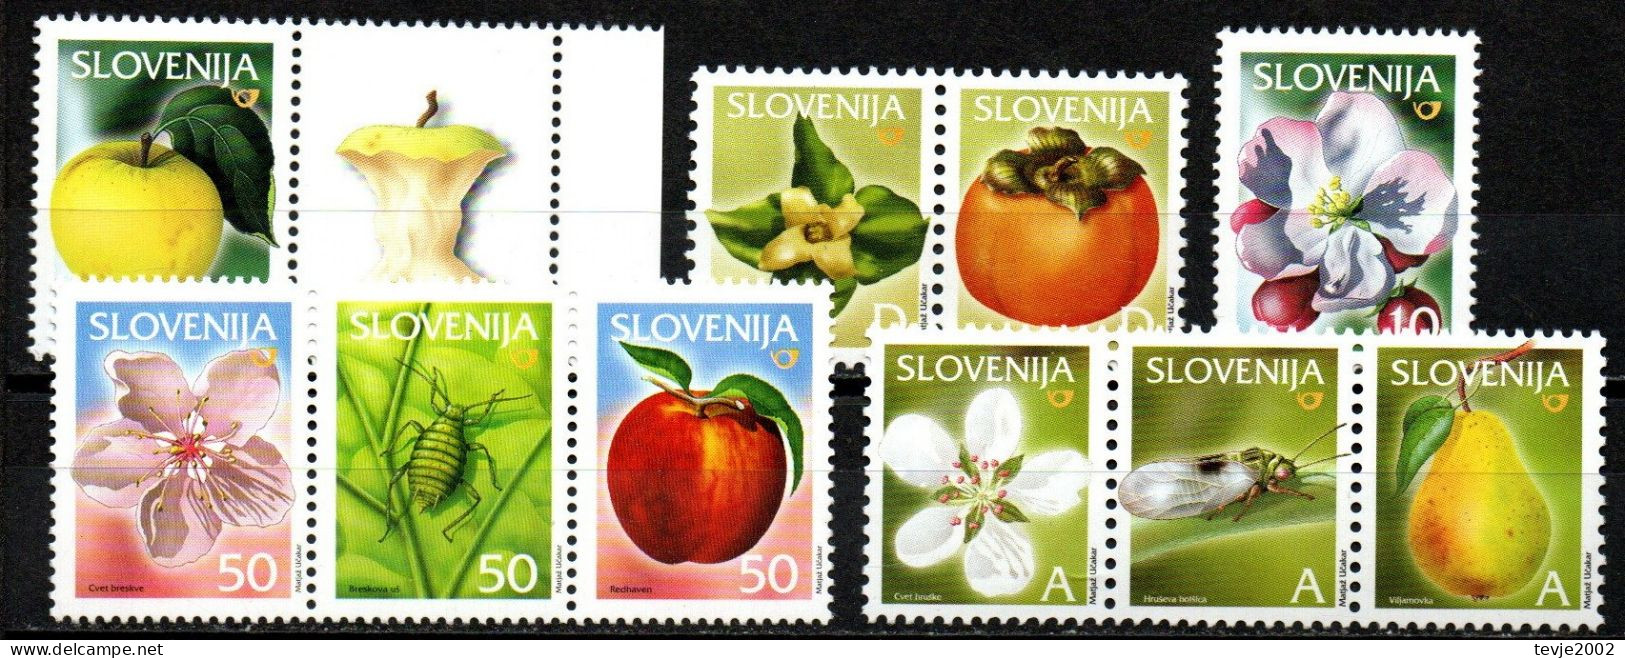 Slowenien Slovenija - Lot Freimarken Aus 2000 - 2006 - Postfrisch MNH - Früchte Obst Fruits - Groenten